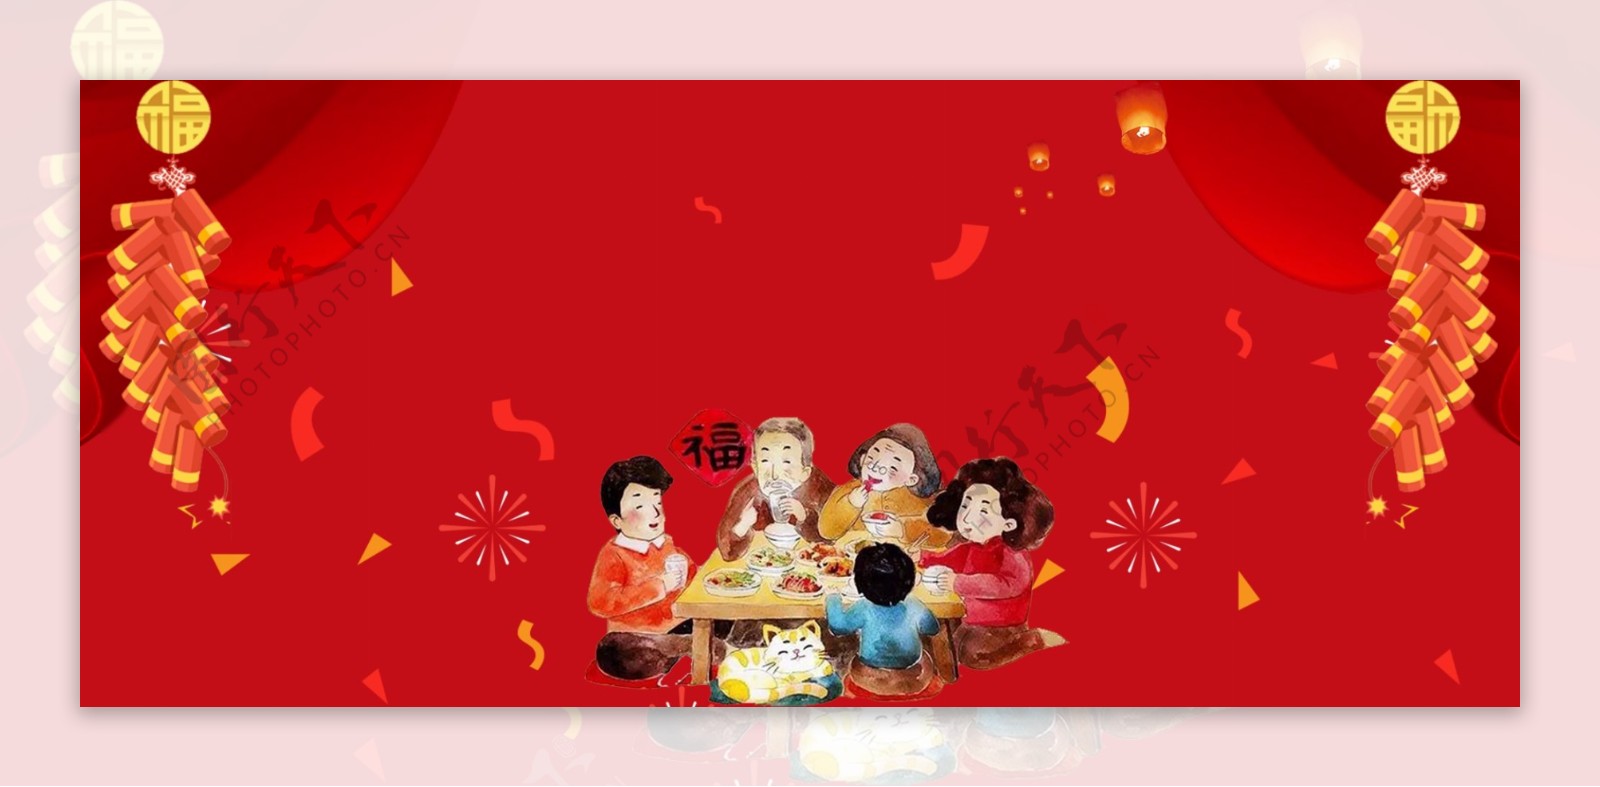 新年年夜饭除夕传统节日banner背景